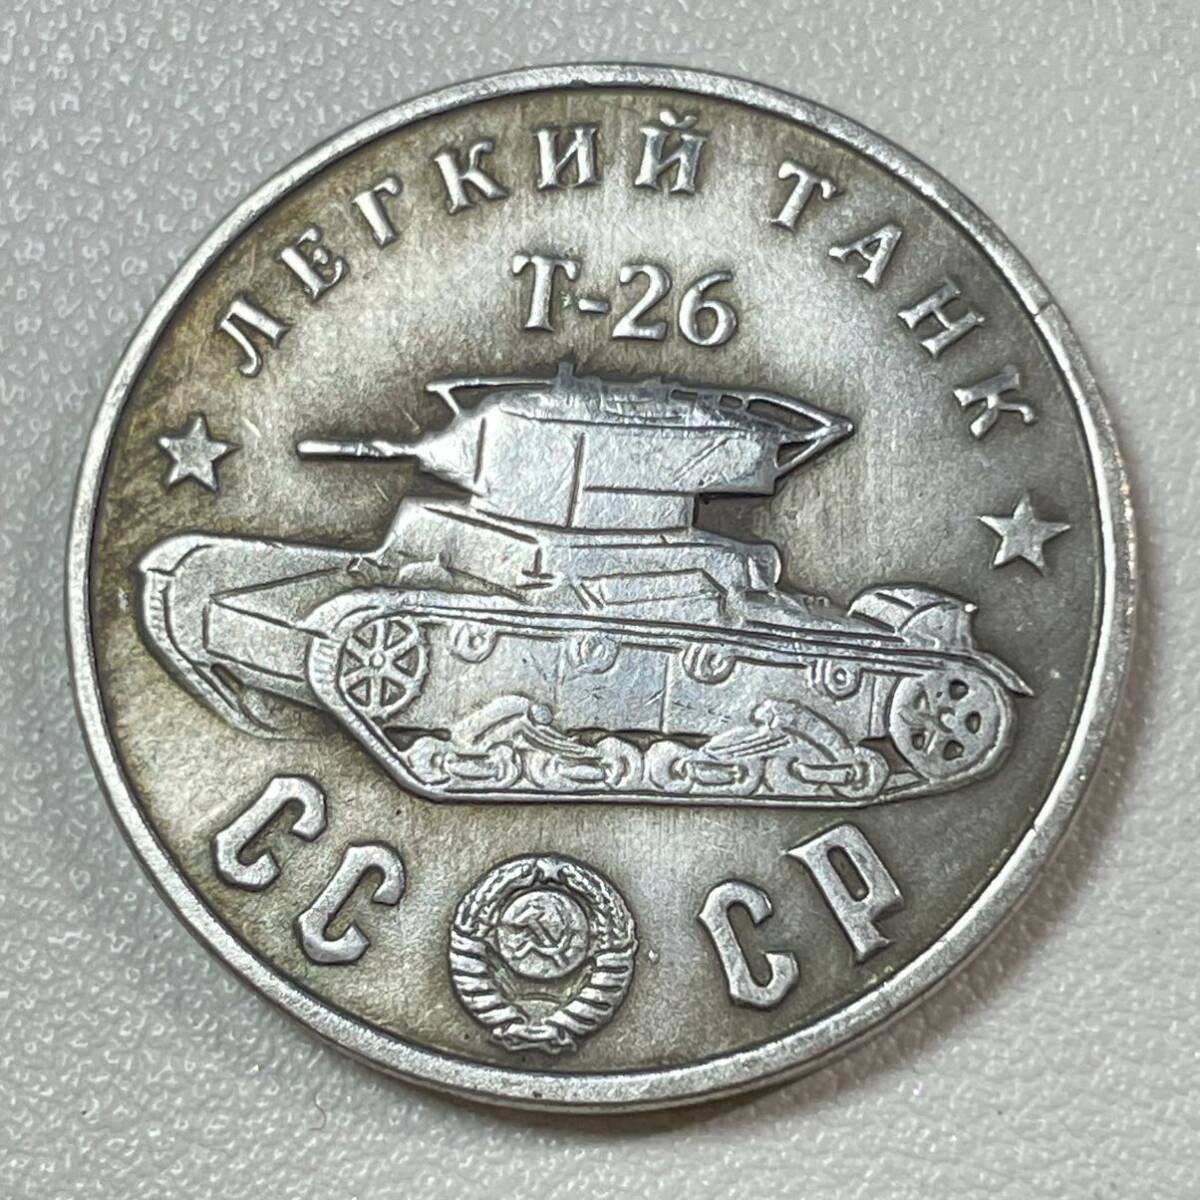 ロシア 硬貨 古銭 ソビエト連邦 戦車 記念幣 T-26 クレムリン宮殿 コレクション コイン 重14.83g_画像1